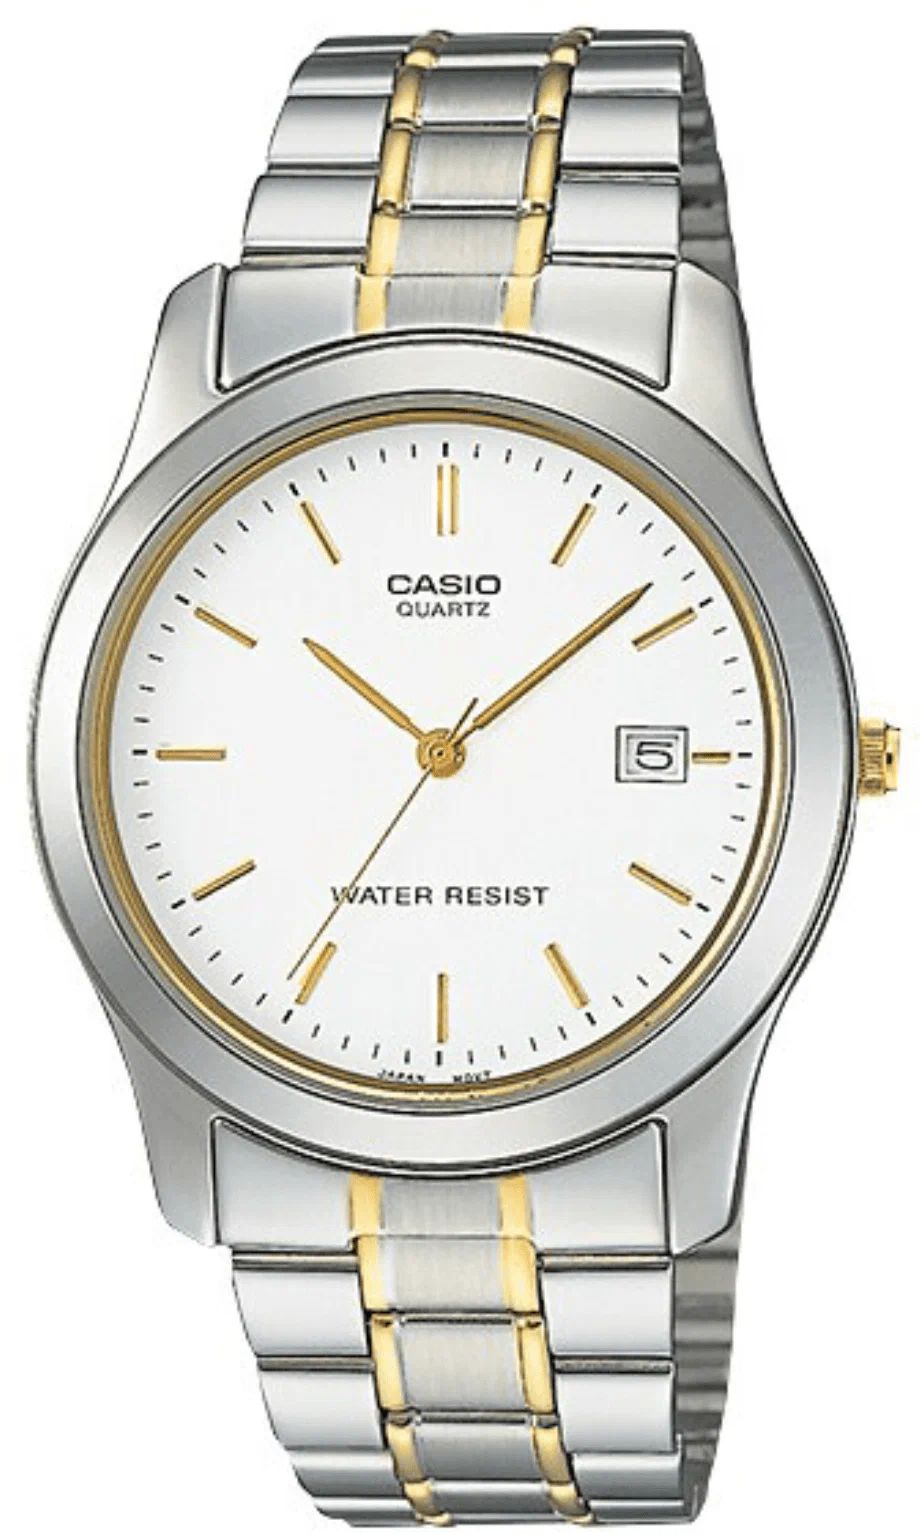 Наручные часы Casio MTP-1141G-7A наручные часы casio f 91wm 7a